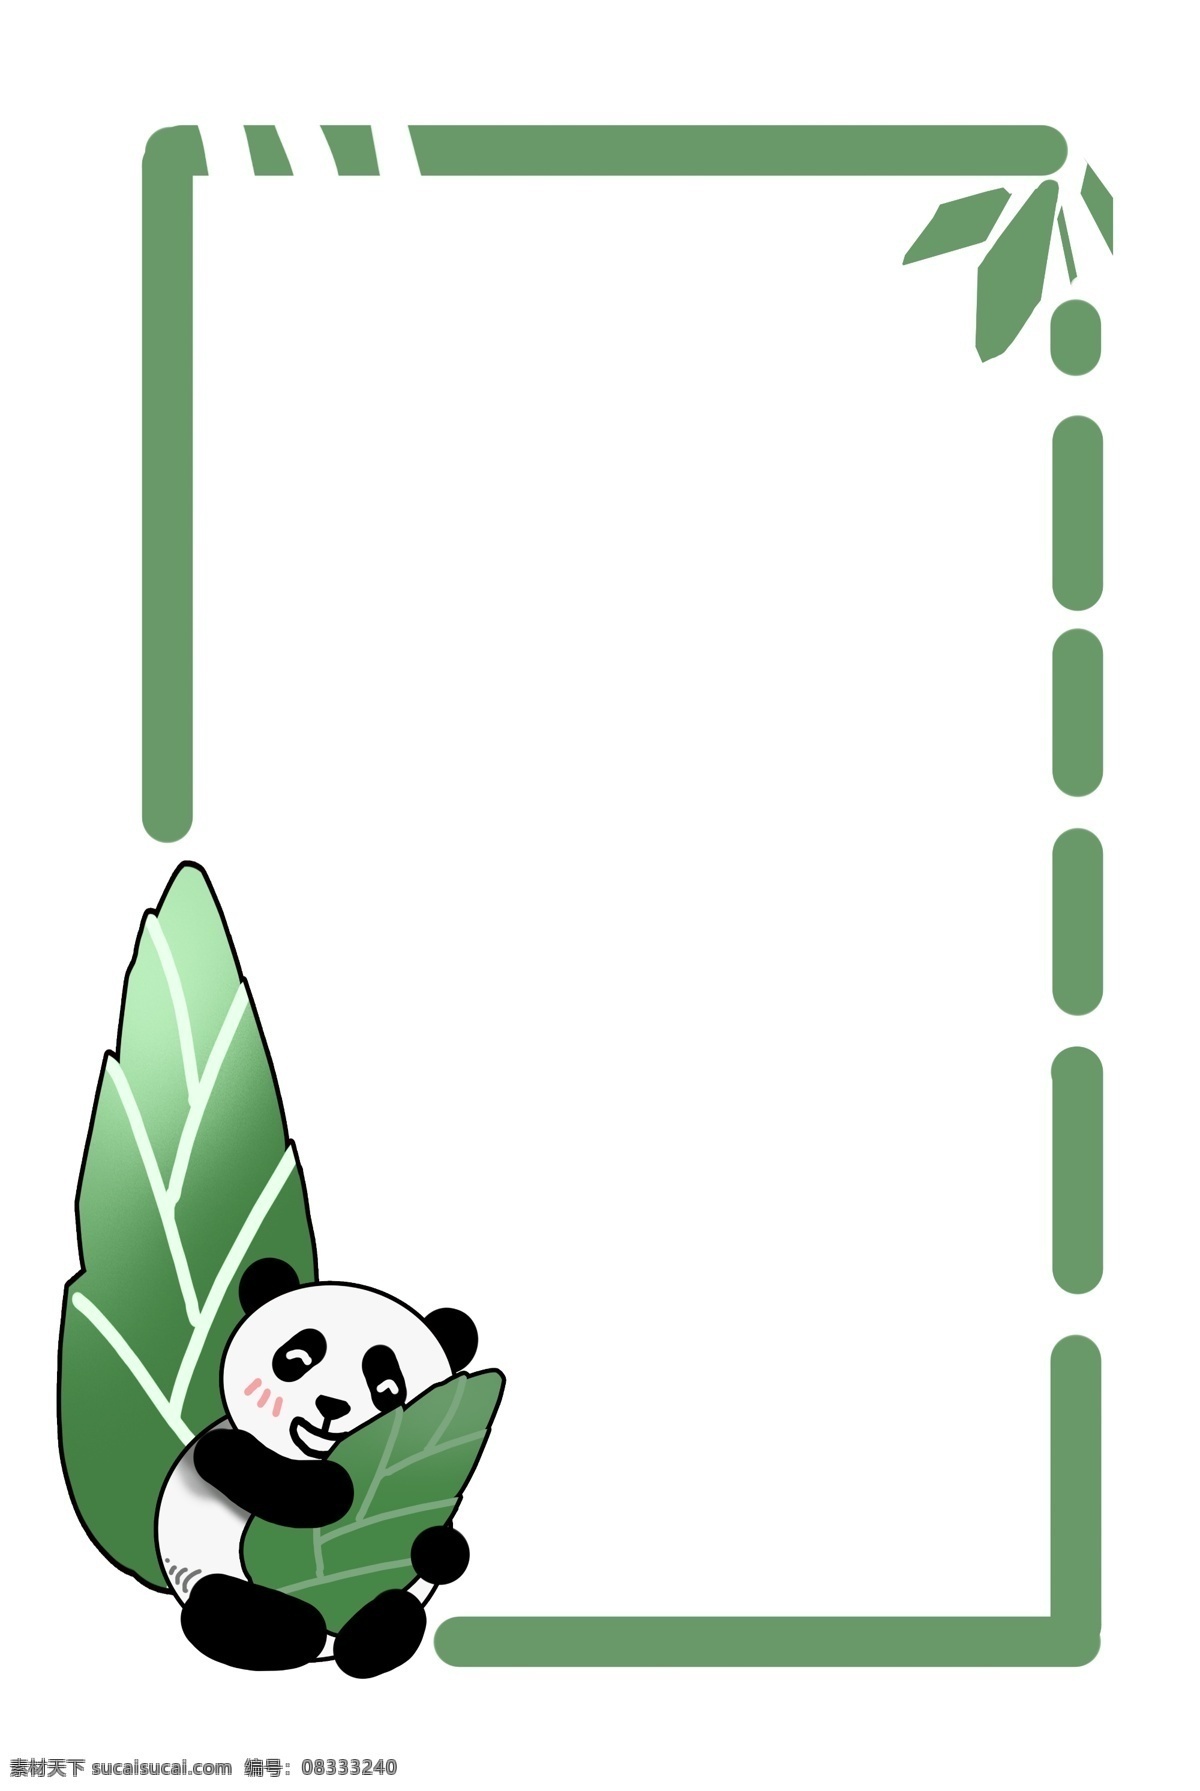 熊猫 边框 手绘 插画 绿色的边框 熊猫边框 手绘边框 虚线边框 植物边框 动物边框 保护动物边框